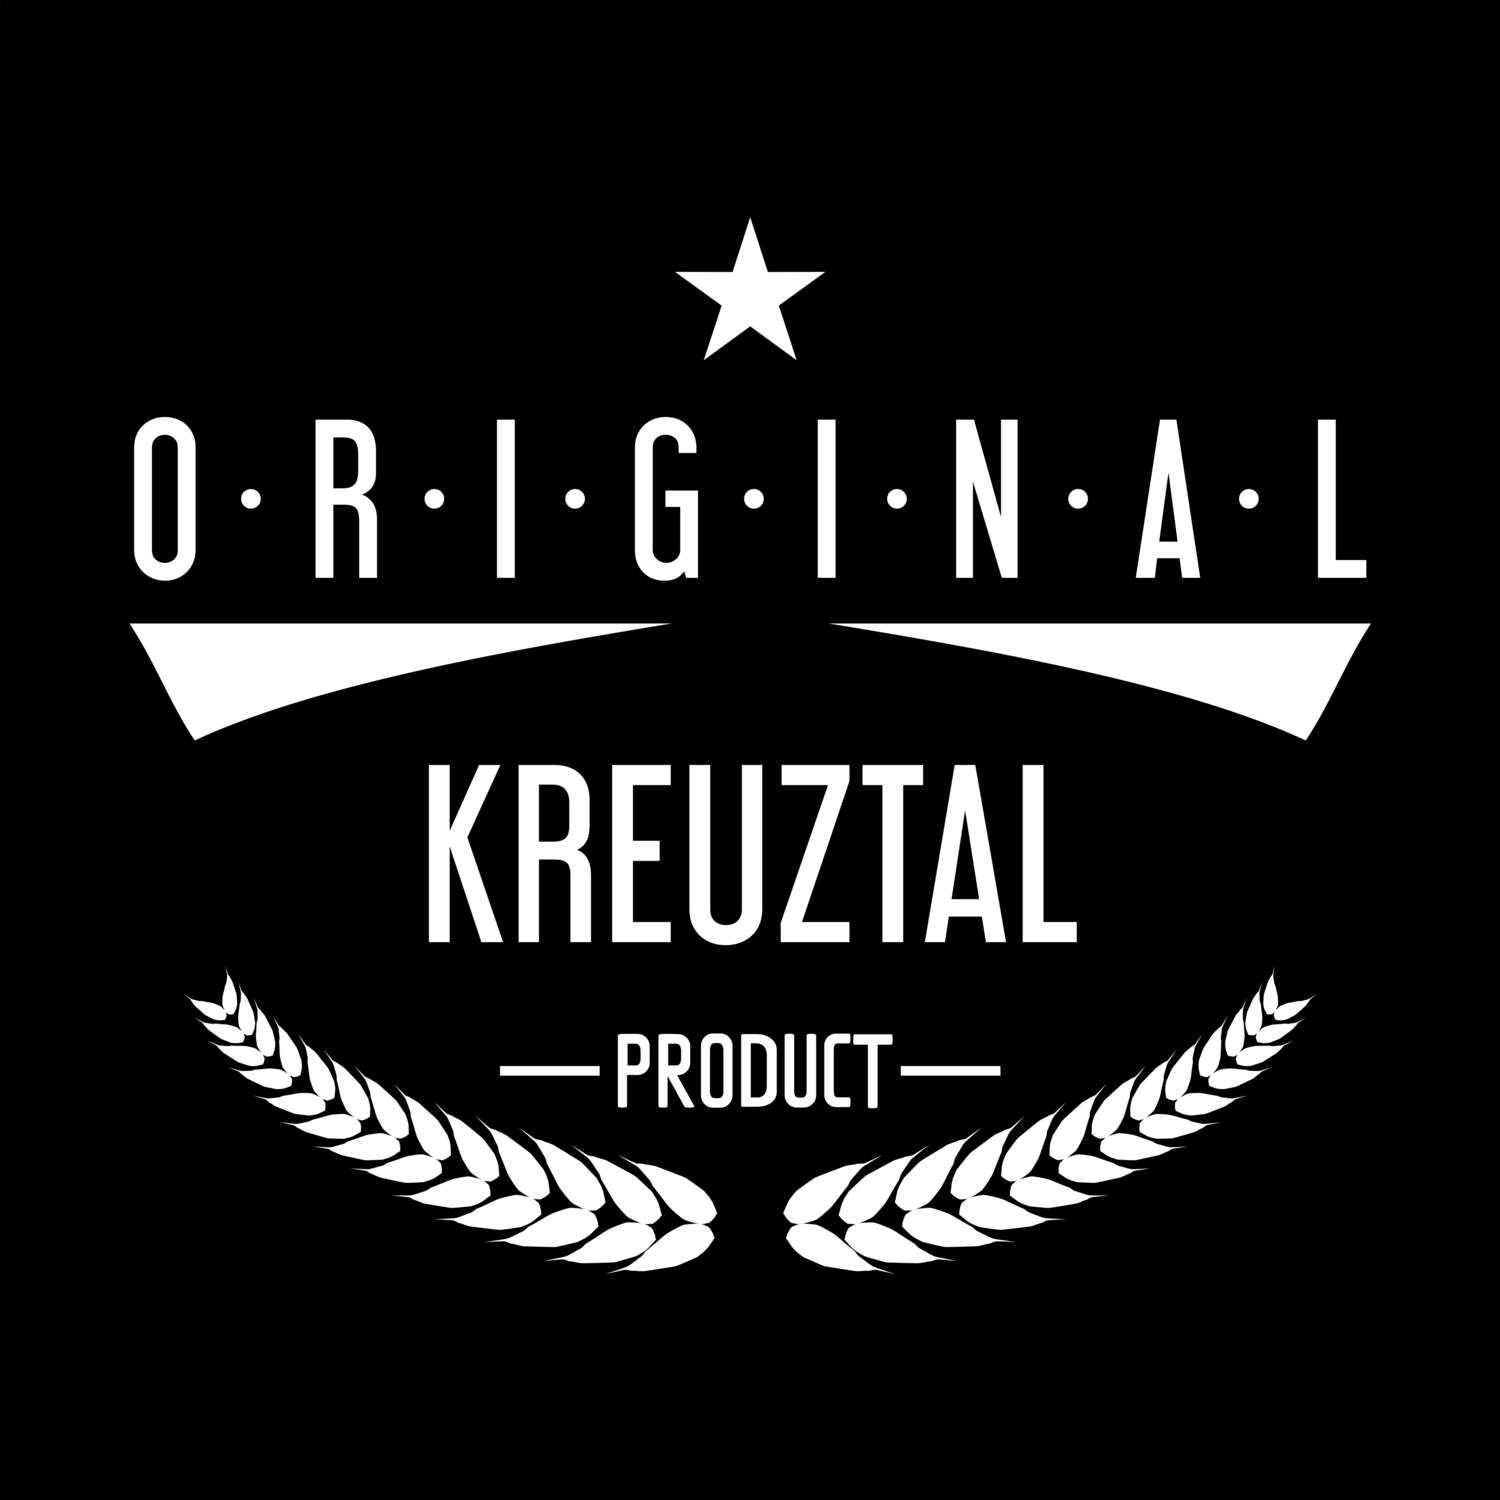 Kreuztal T-Shirt »Original Product«